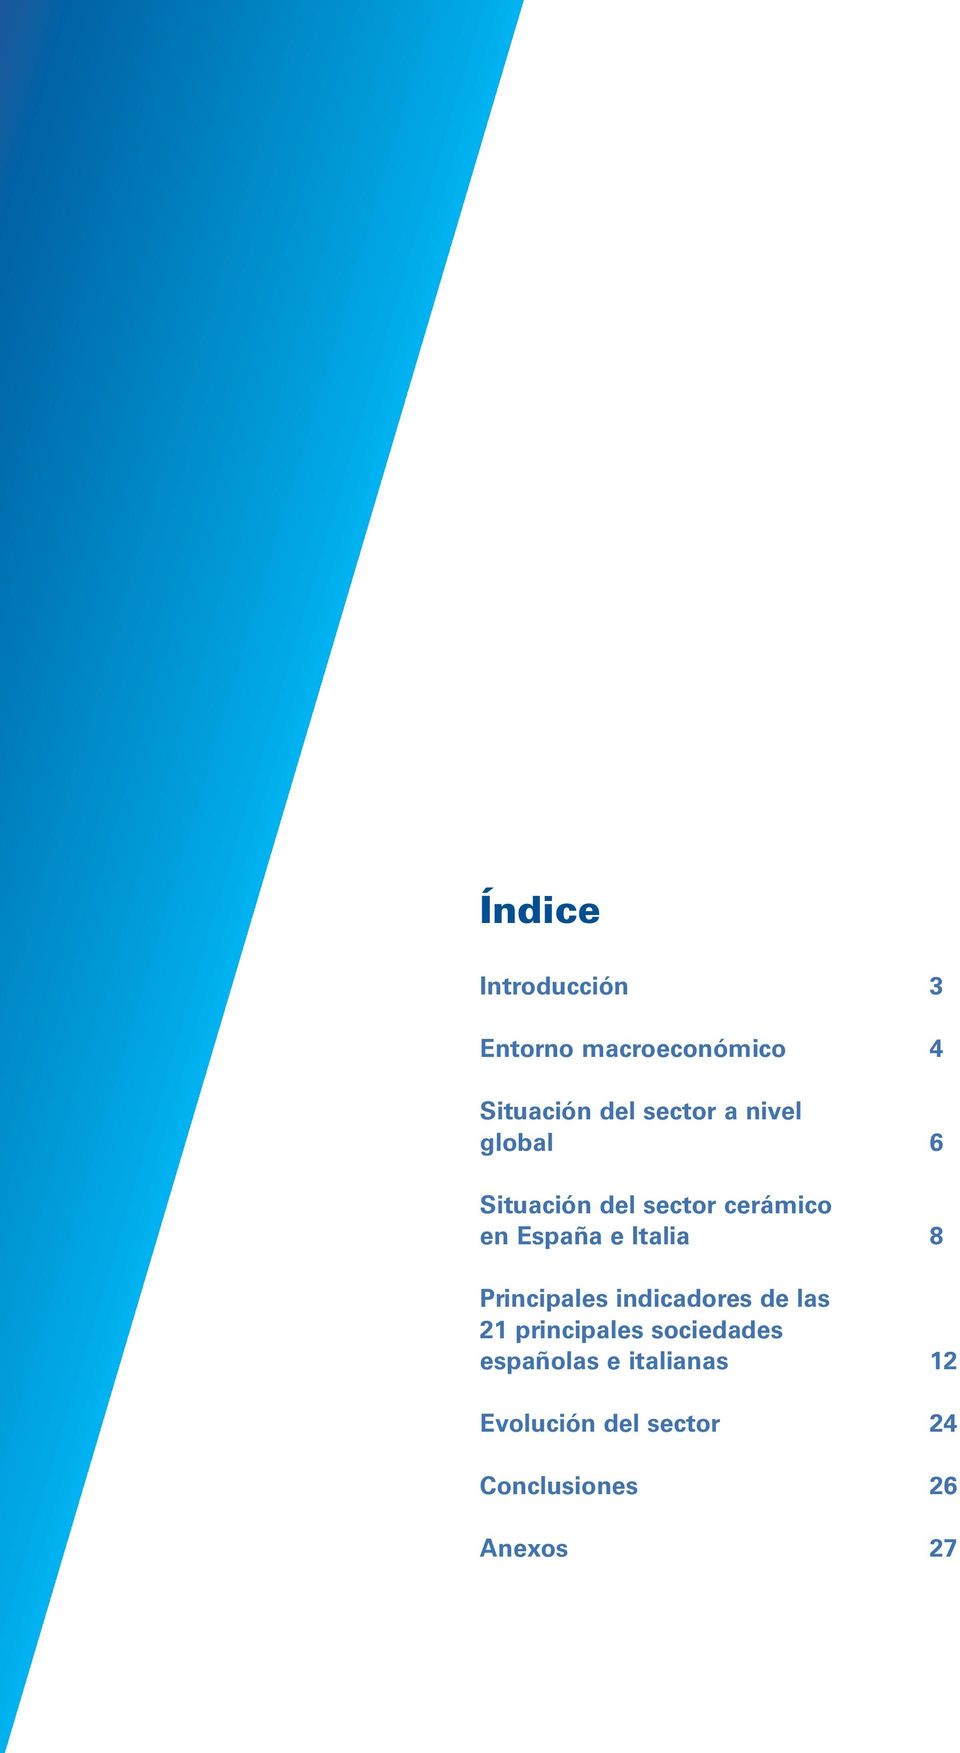 Italia 8 Principales indicadores de las 21 principales sociedades